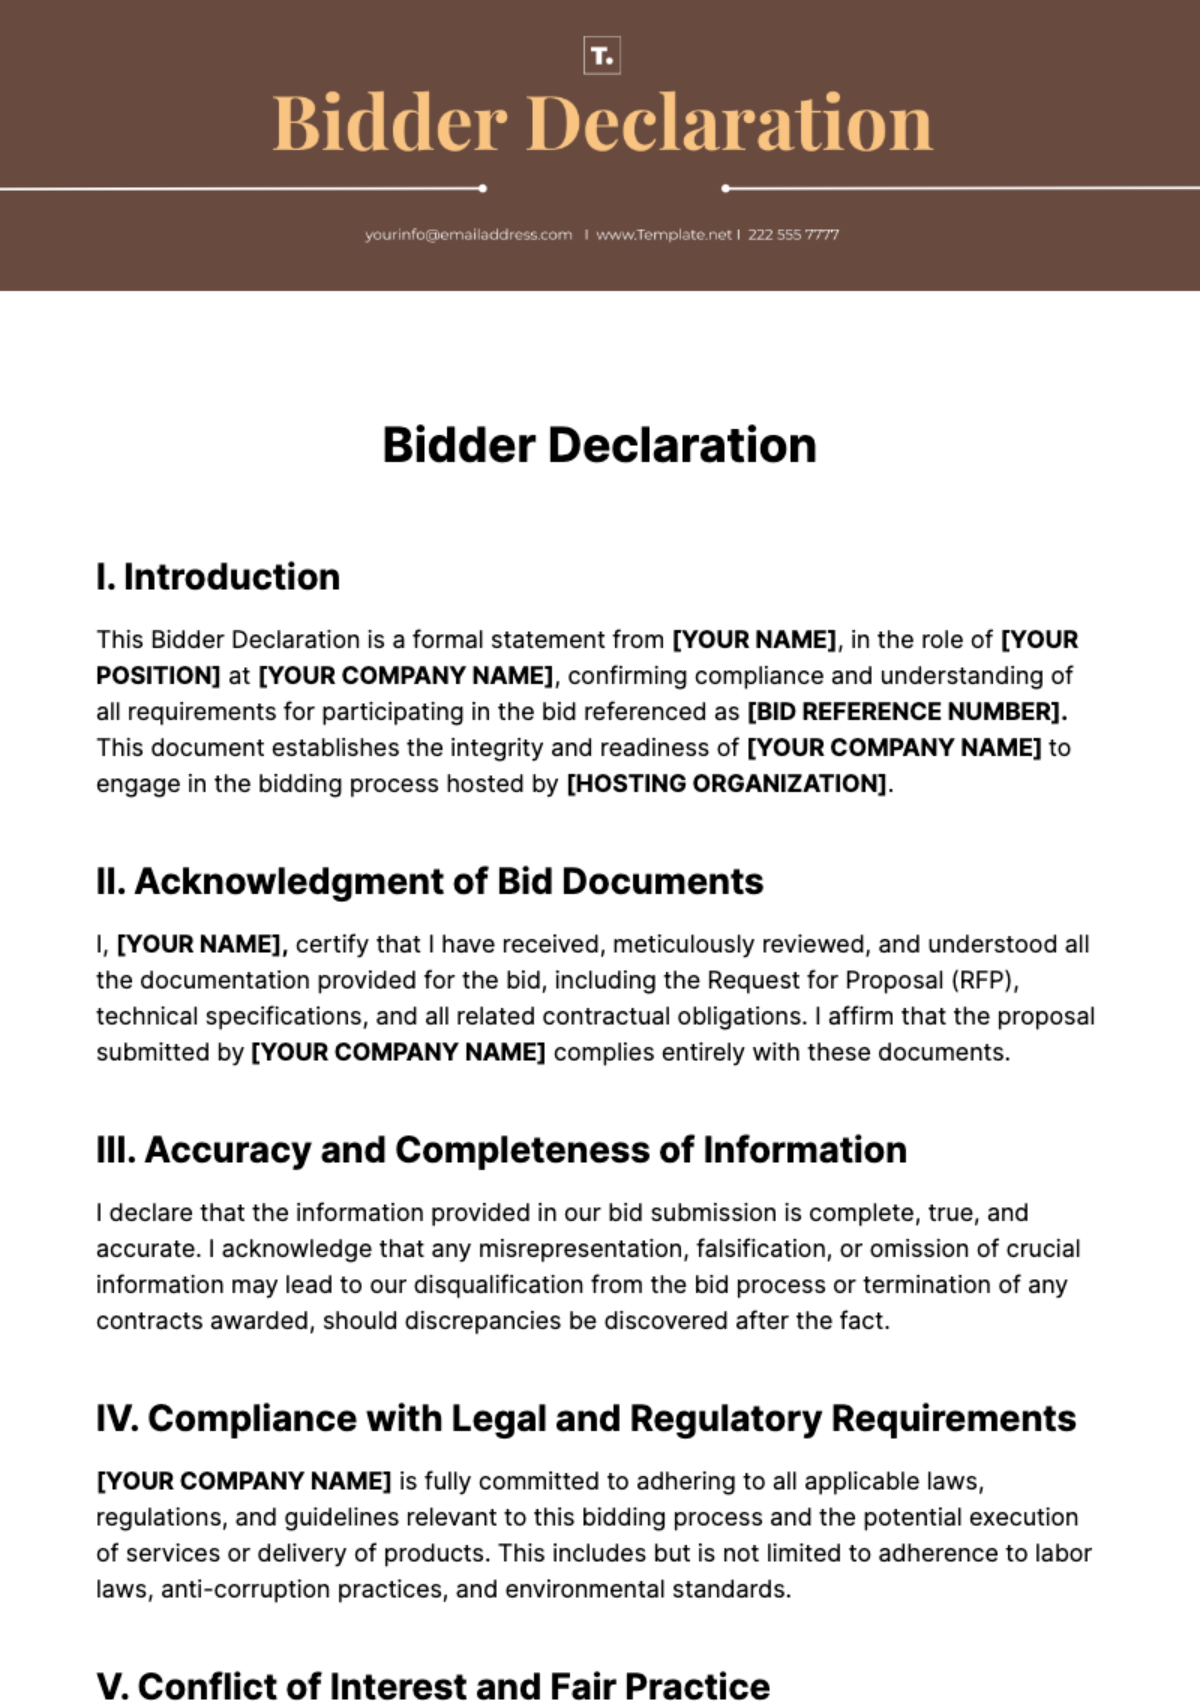 Bidder Declaration Template